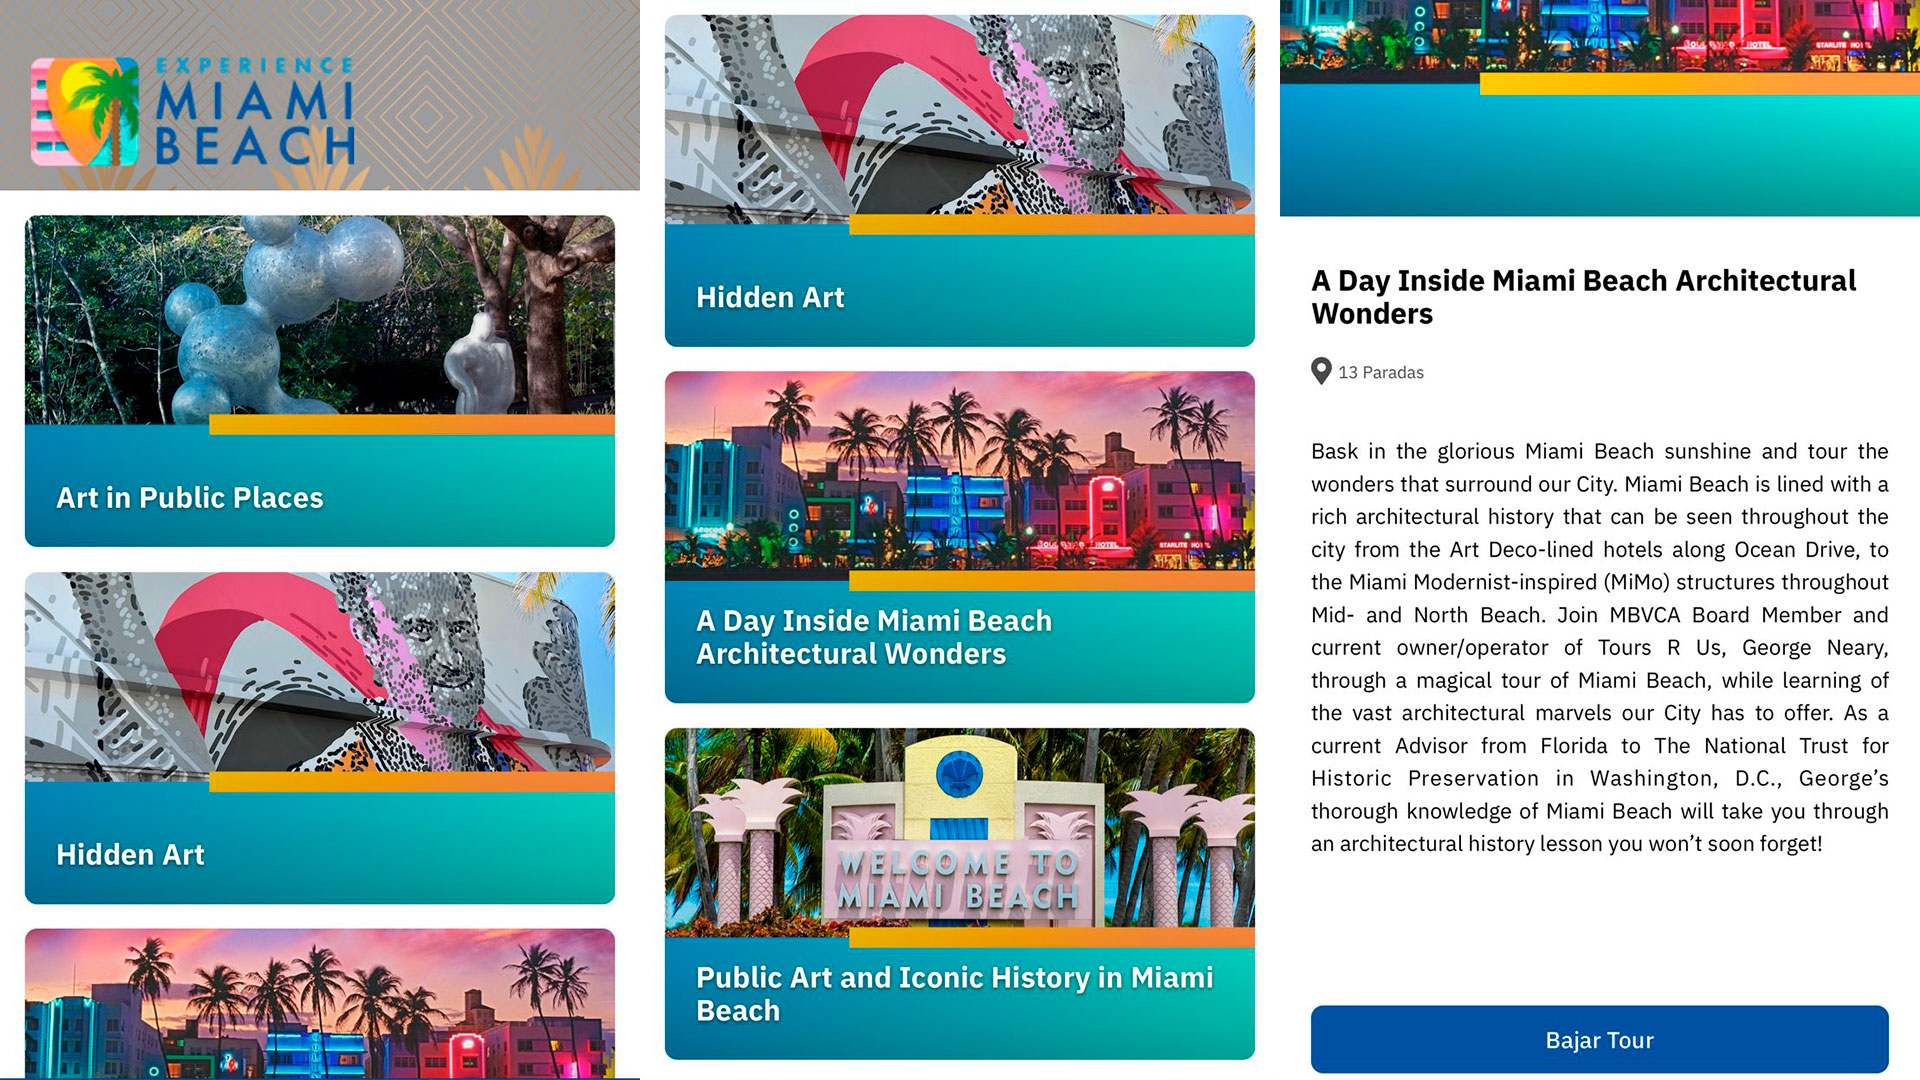 EXP Miami Beach Tours, una extensión de la aplicación Experience Miami Beach, es una guía interna con las mejores maneras de explorar la ciudad. (MBVCA)